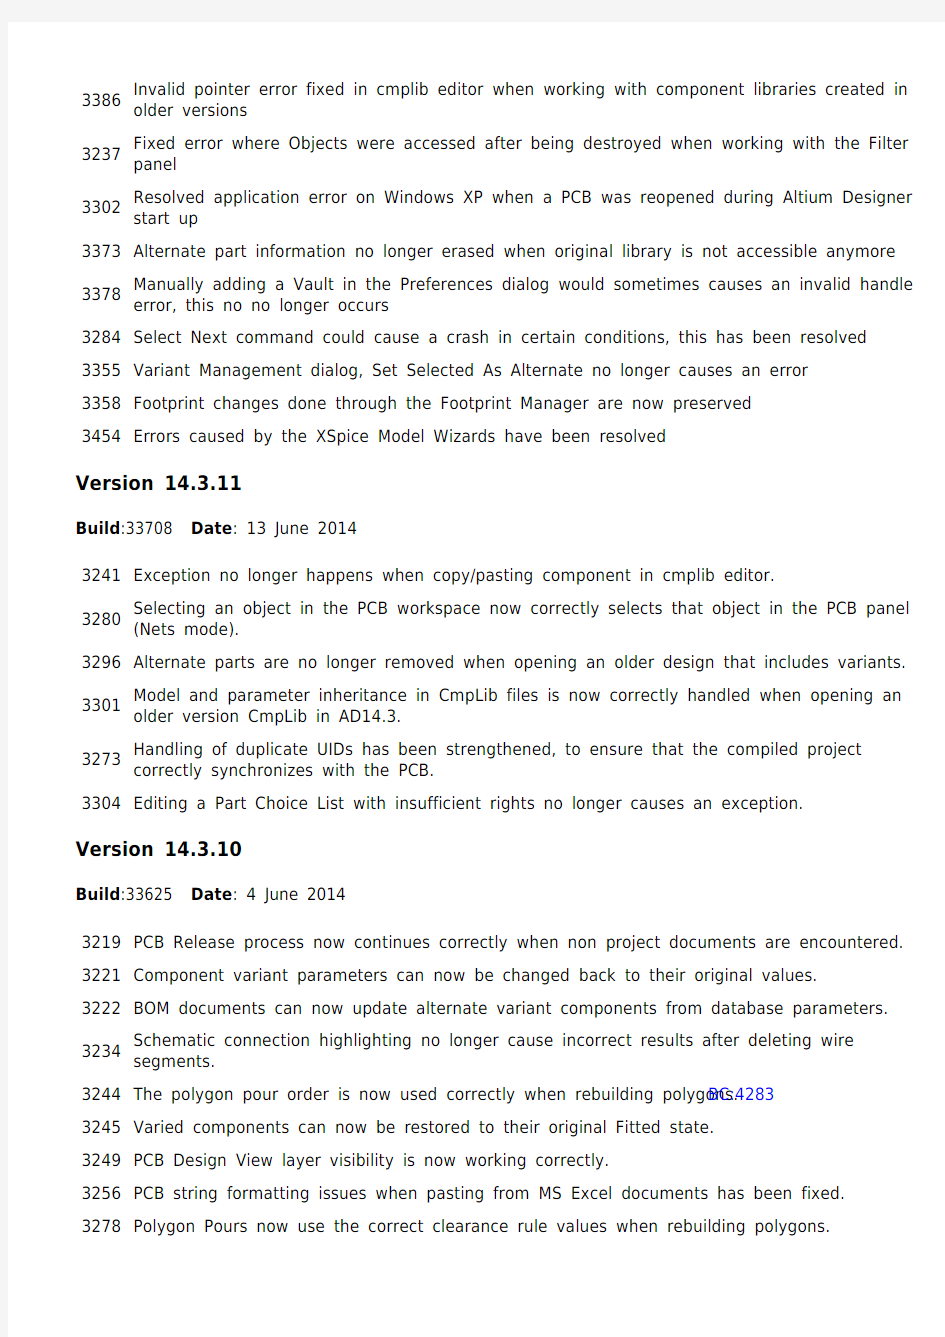 Release Notes for Altium Designer Version 14.3 - 2014-07-10